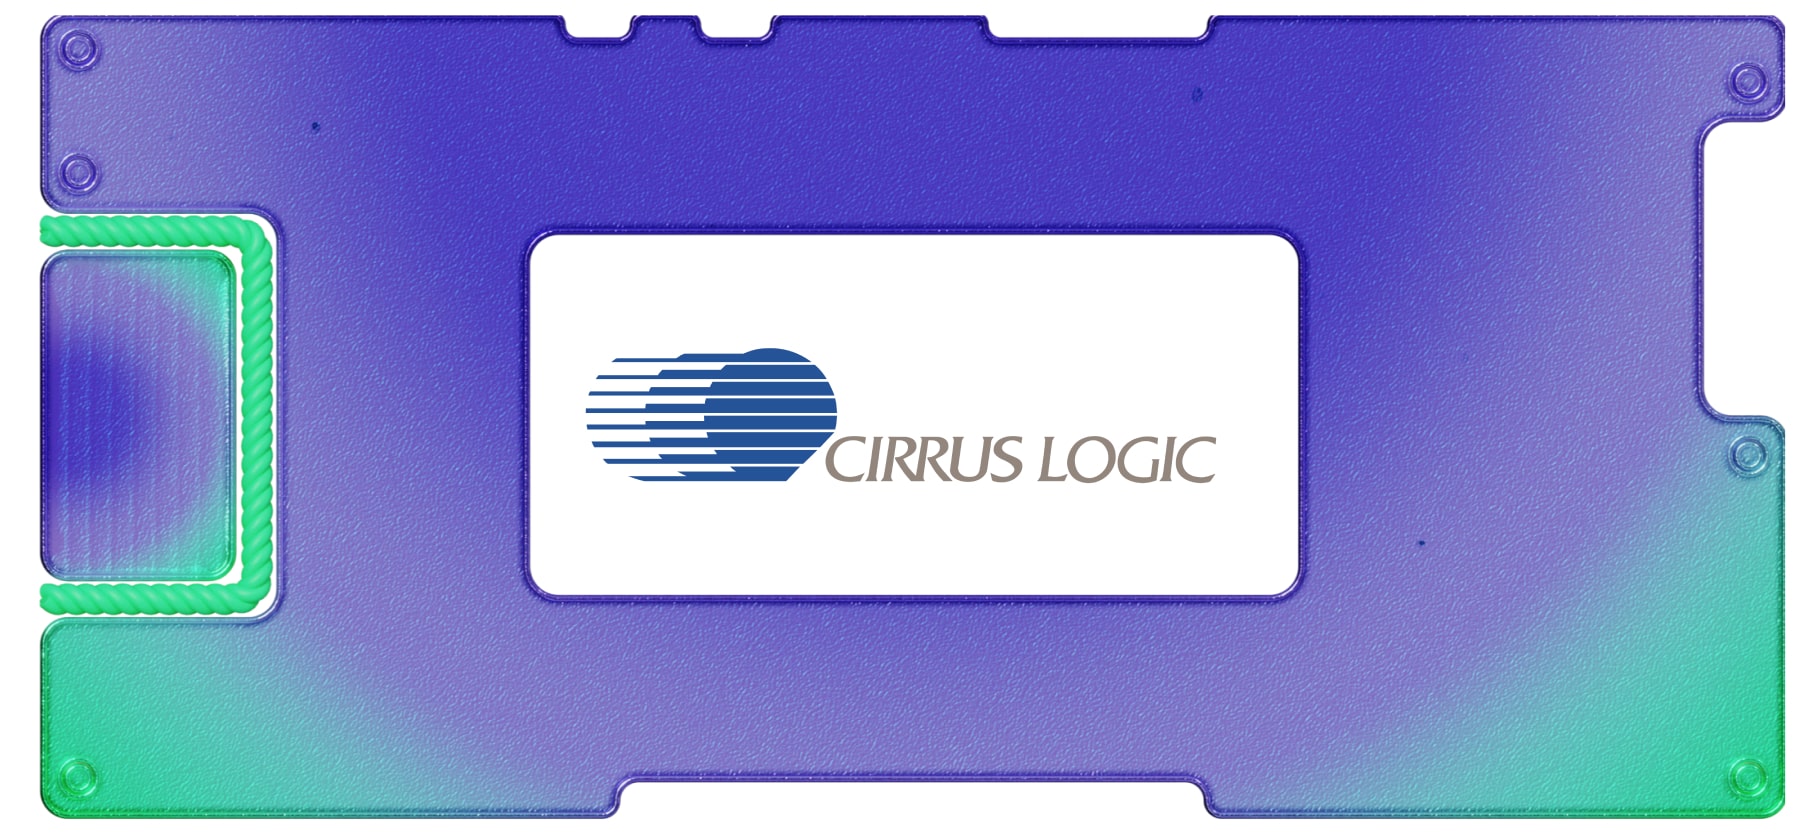 Инвестидея: Cirrus Logic, потому что скоро разберут